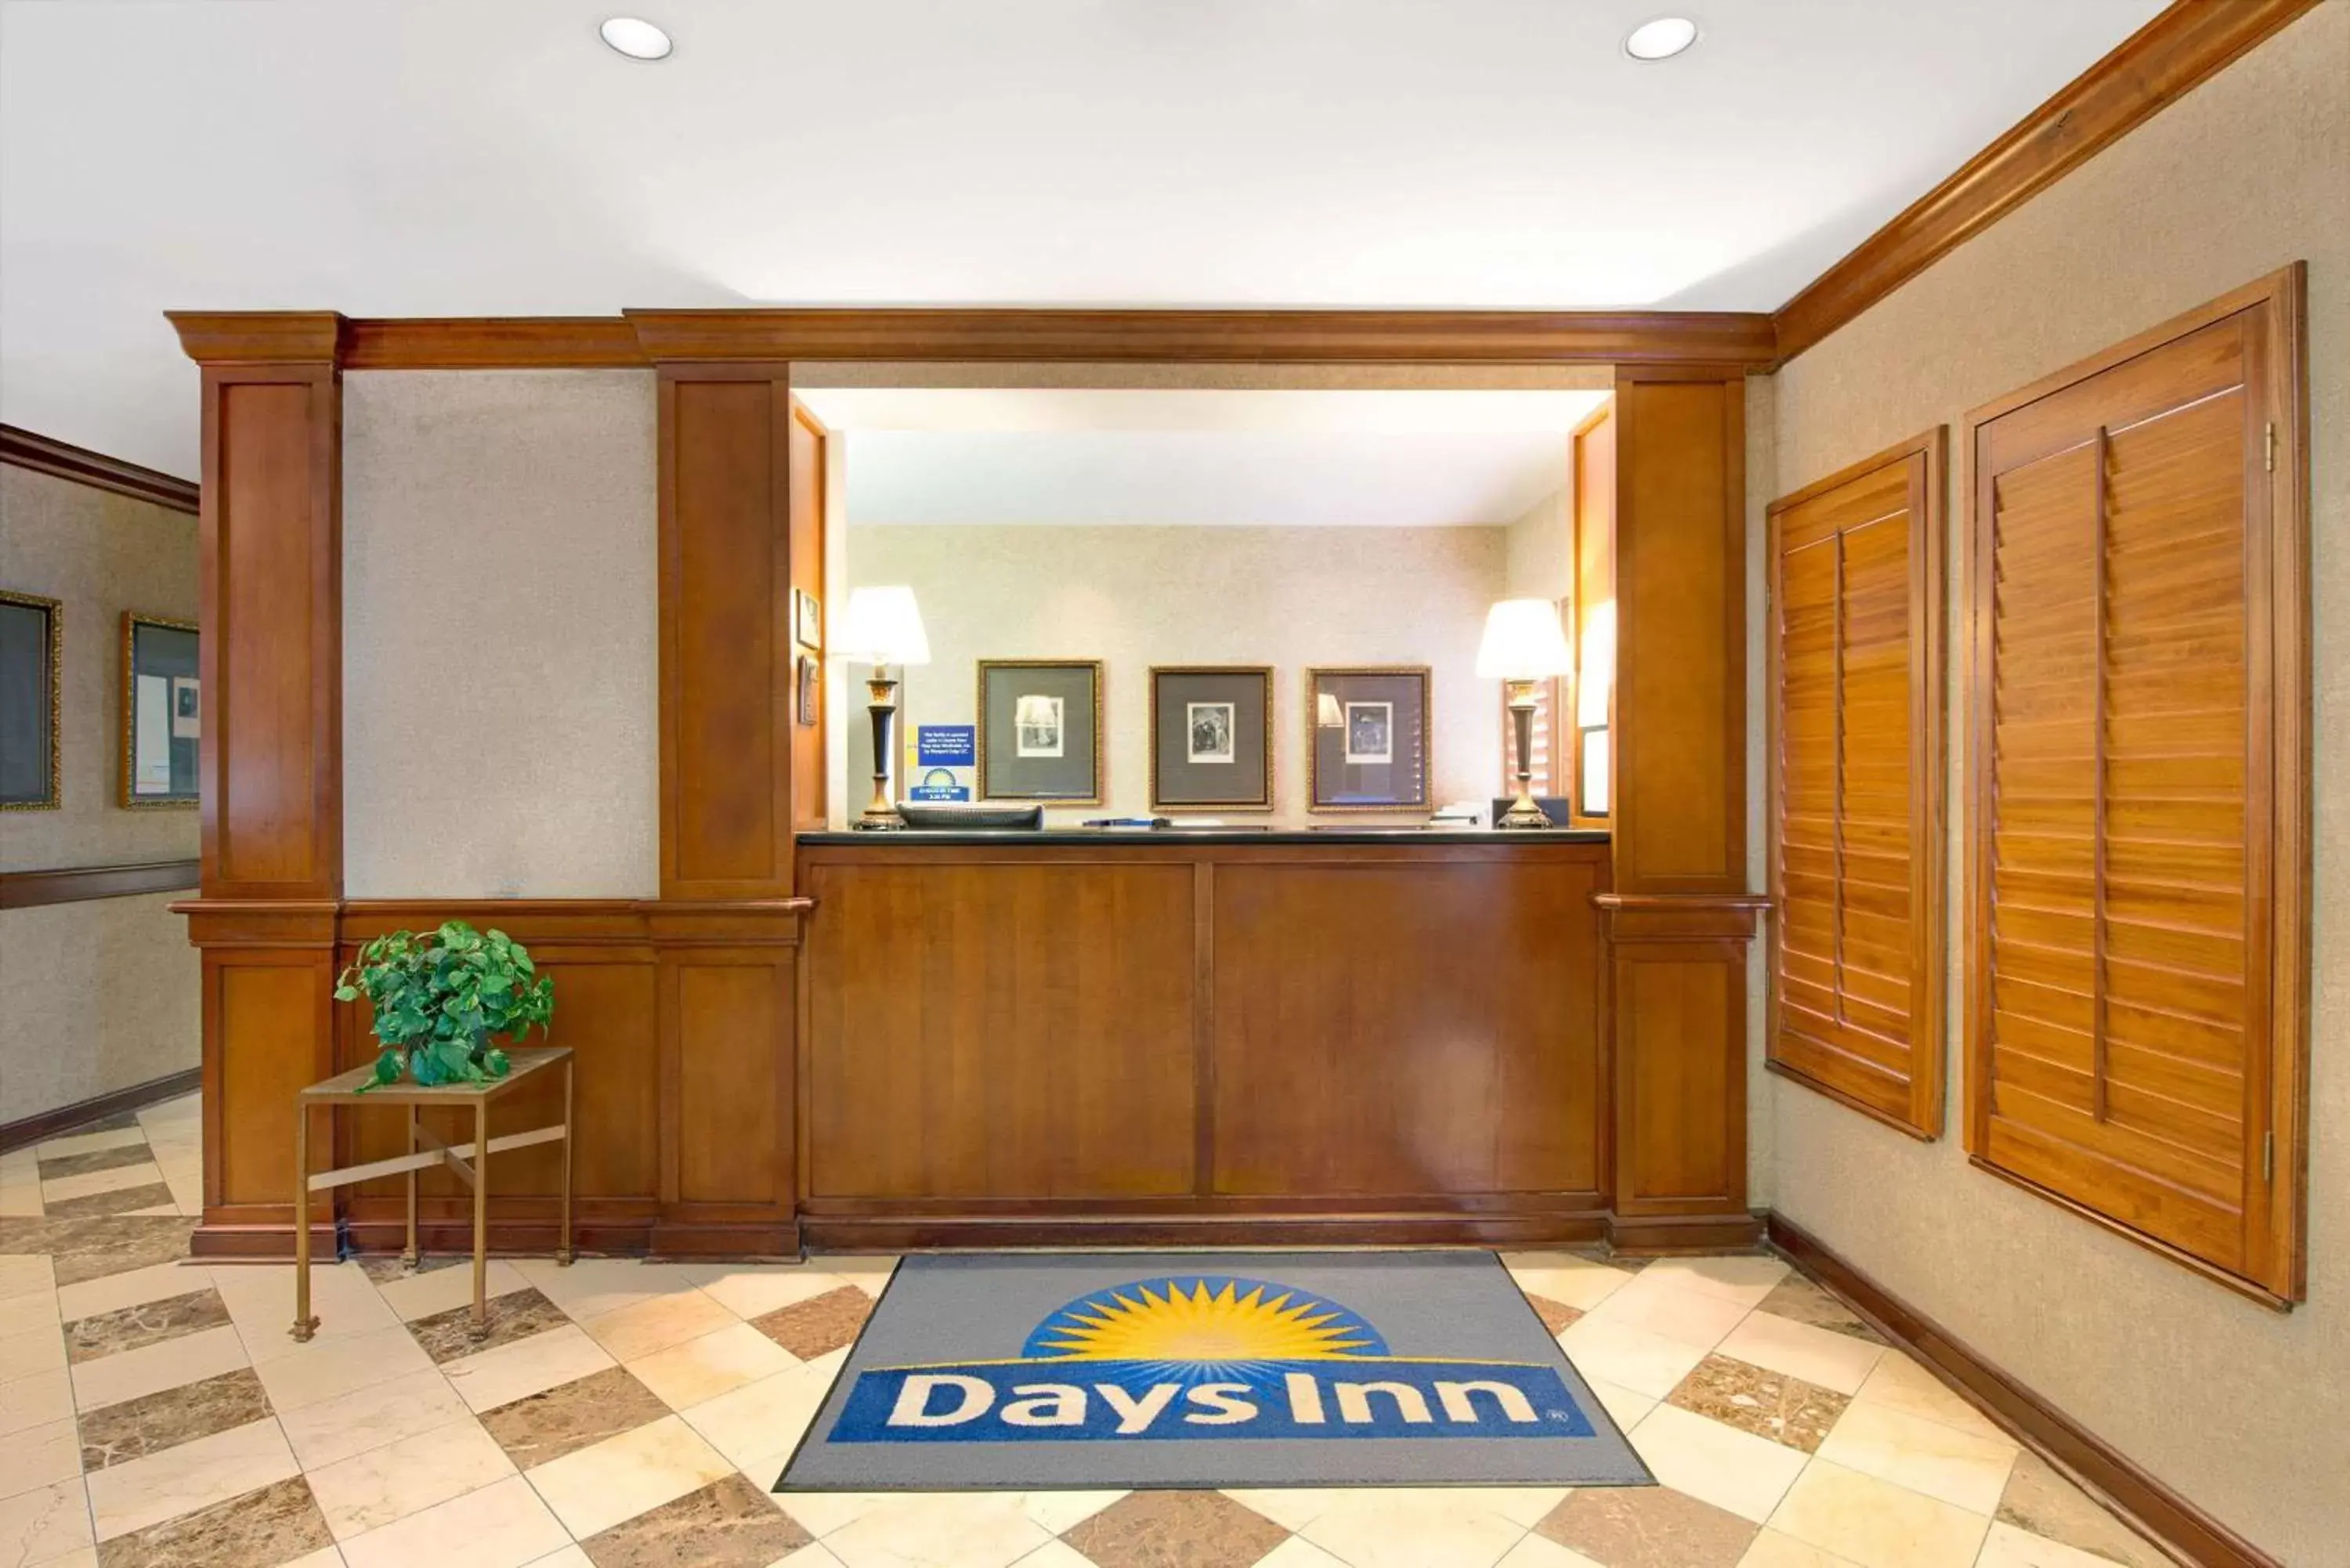 Lobby or reception in Days Inn by Wyndham St. Louis/Westport MO